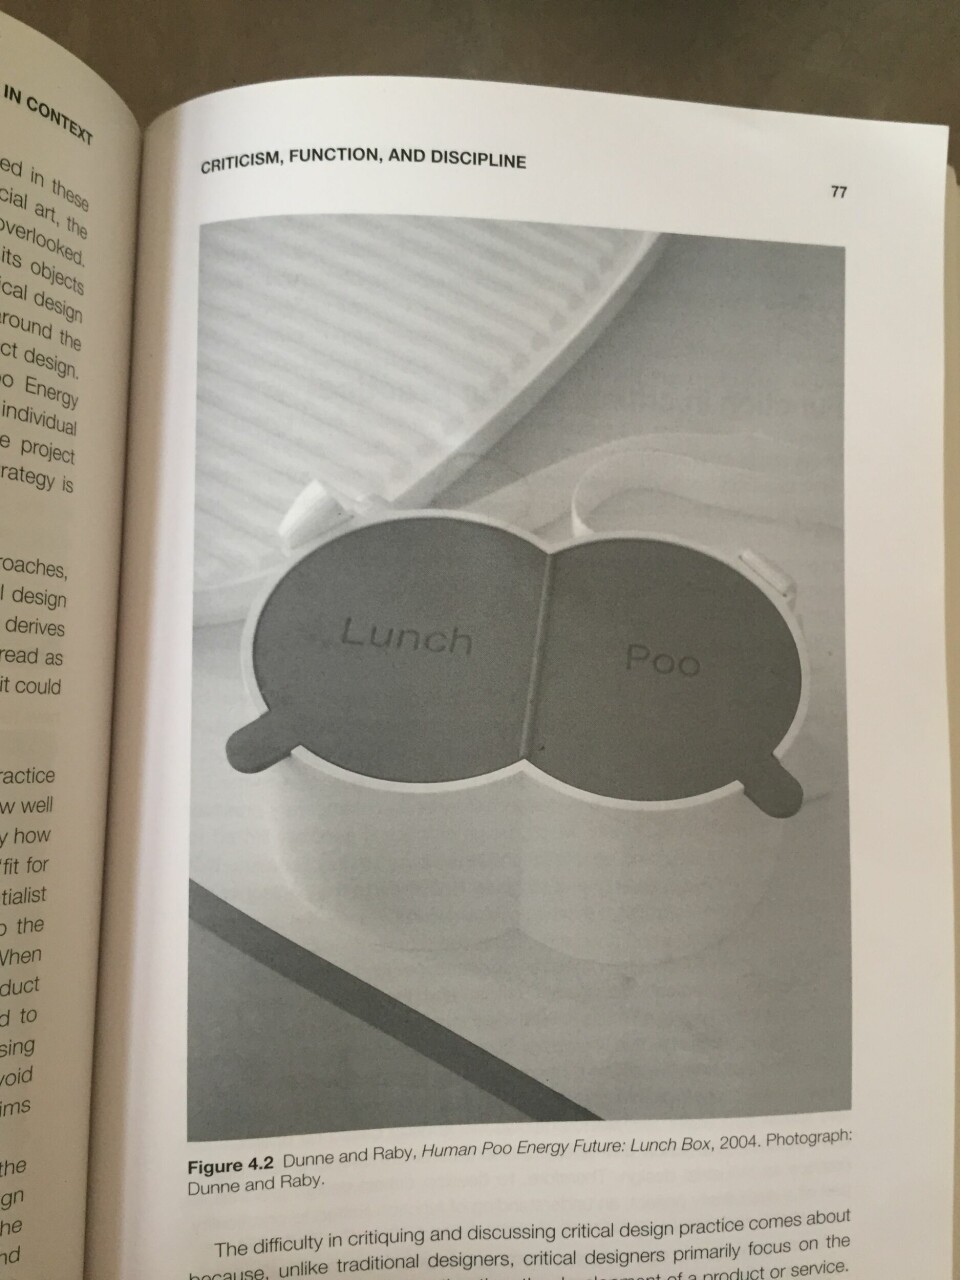 Human Poo energy Future: Lunch Box, 2004 avbildet på side 77 i boken.